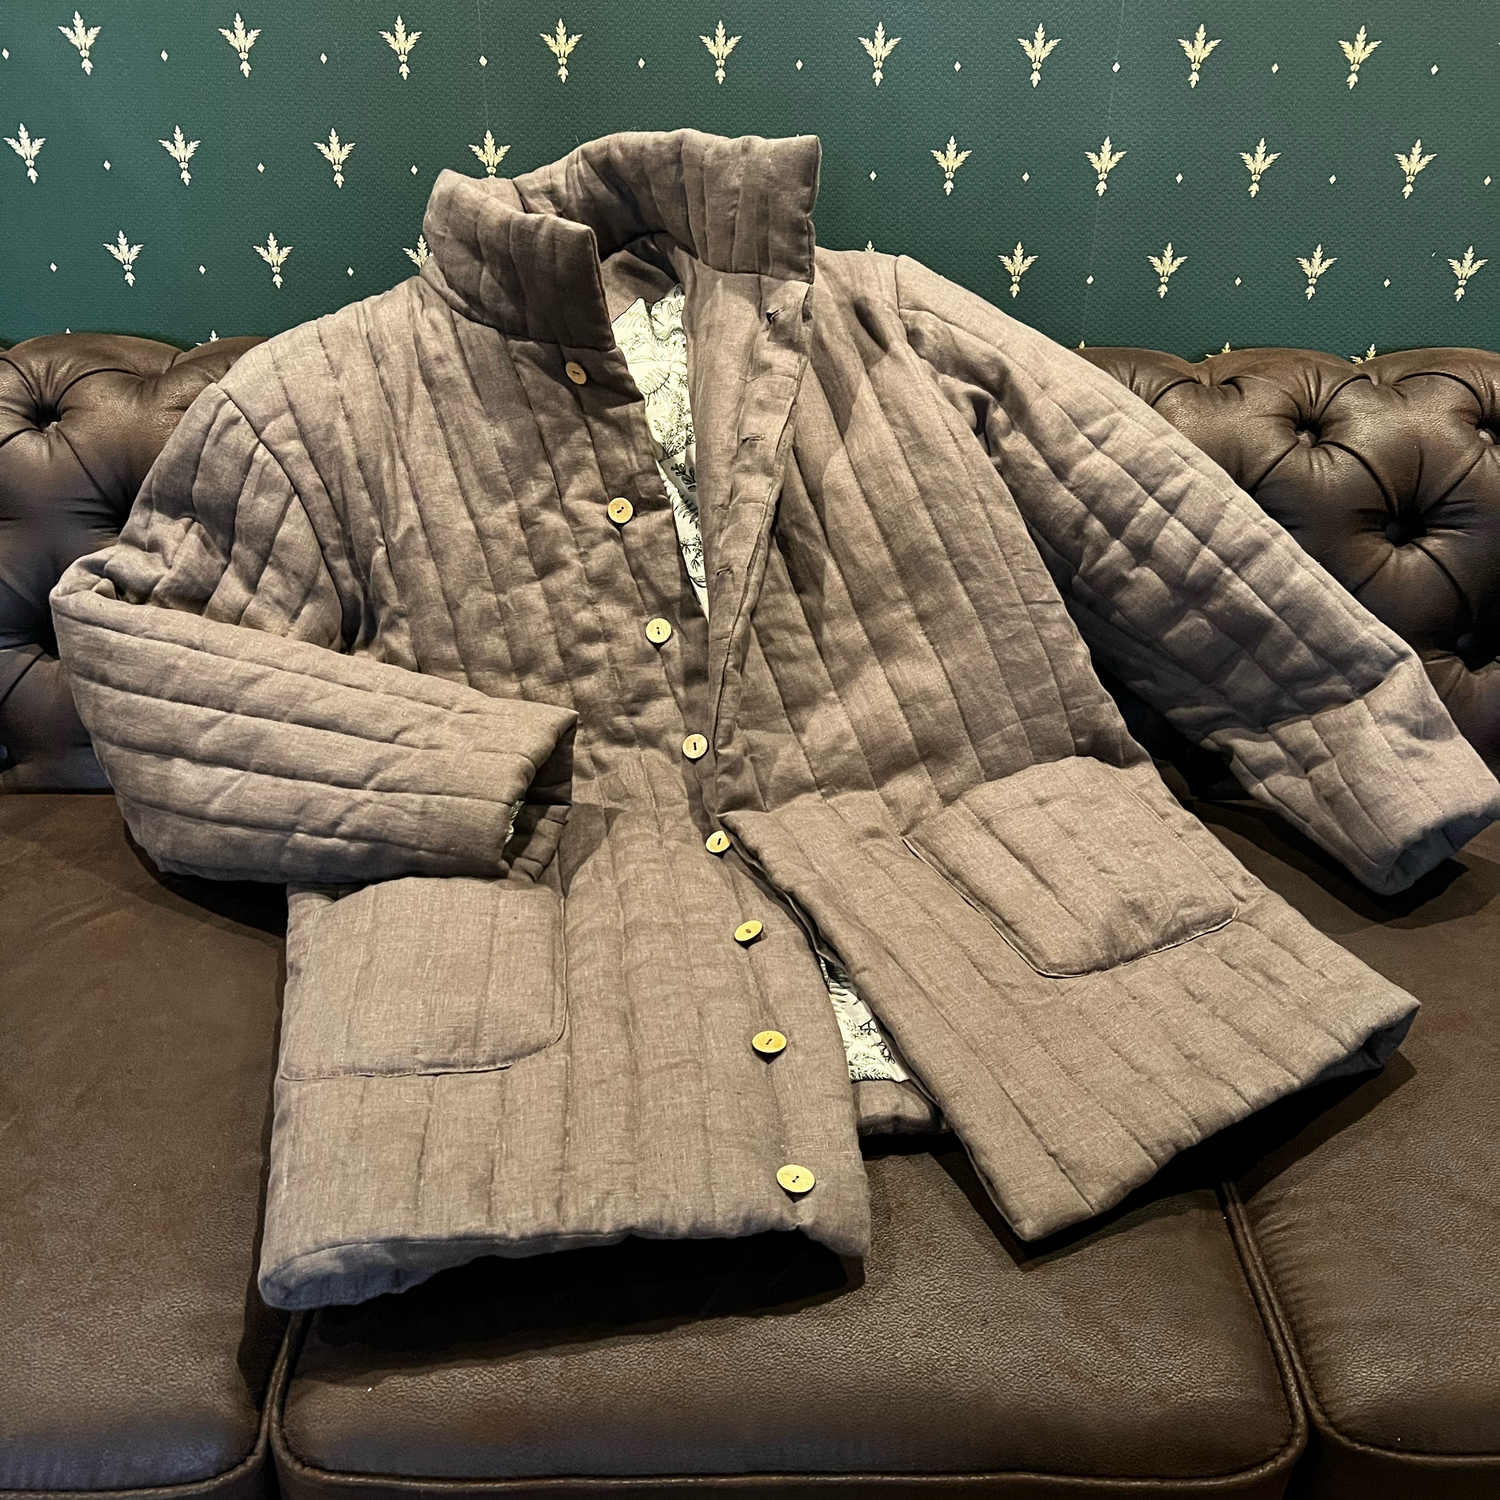 Photo №1 к отзыву покупателя nataliya_sin о товаре Куртки: льняная мужская стеганая куртка, фуфайка, стёганка, телогрейка